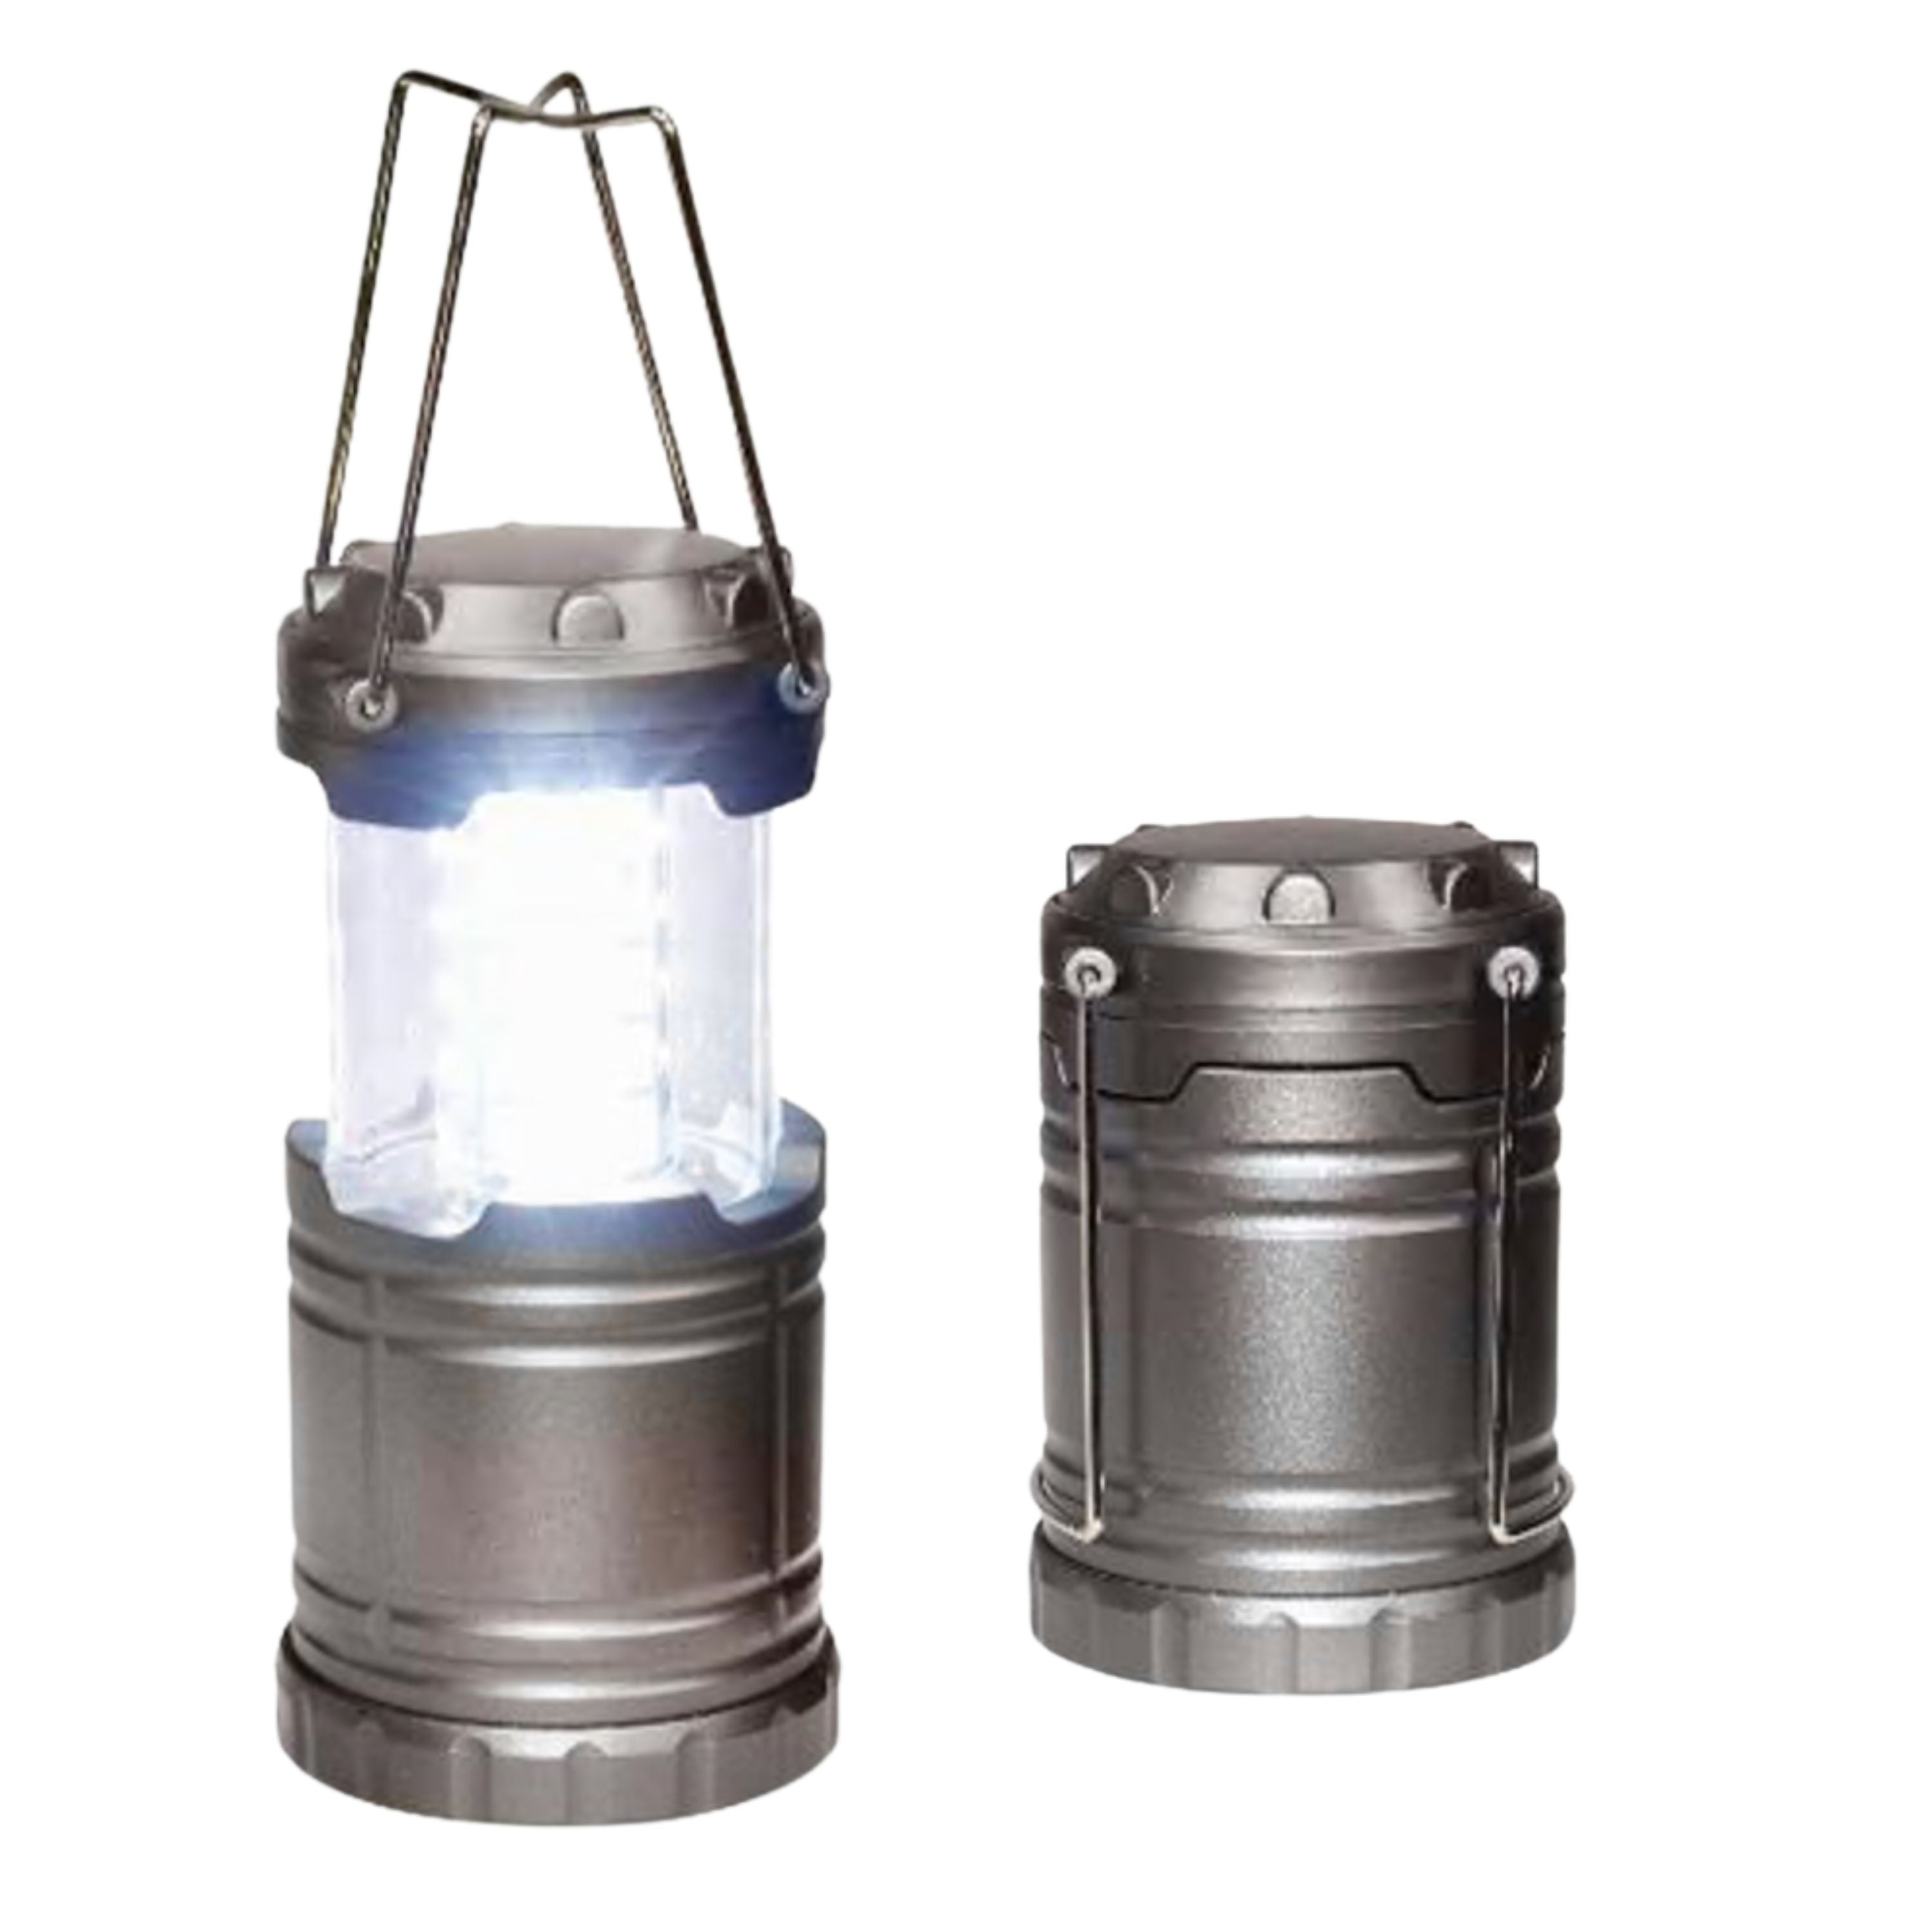 "Tak-Lite" Collapsible lantern - 200 lumens